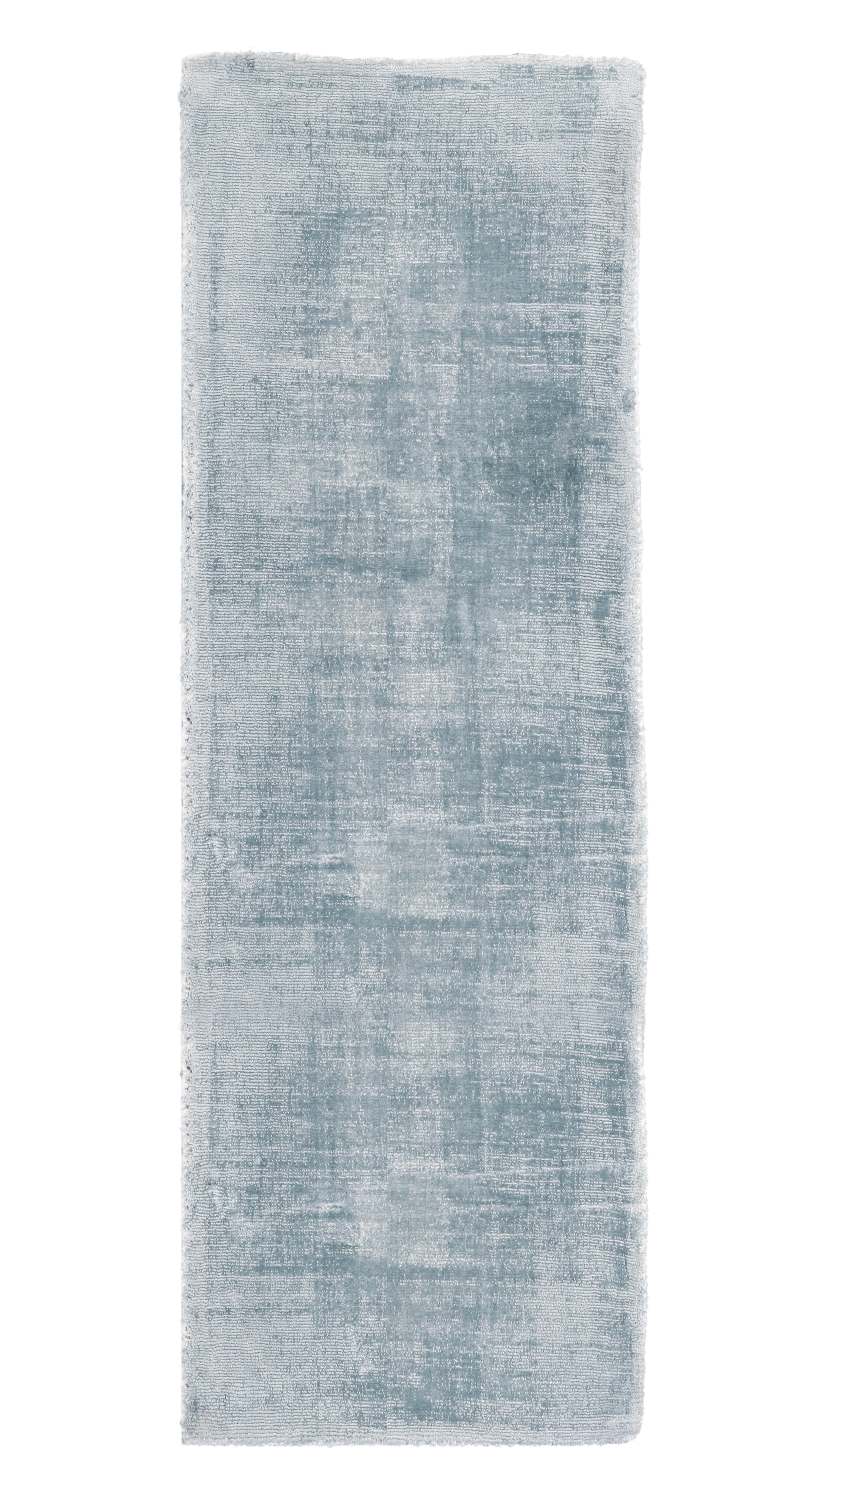 Der Teppich Rashmi überzeugt mit seinem modernen Design. Gefertigt wurde die Vorderseite aus Viskose und die Rückseite aus Baumwolle. Der Teppich besitzt eine hellblauen Farbton und die Maße von 80x250 cm.